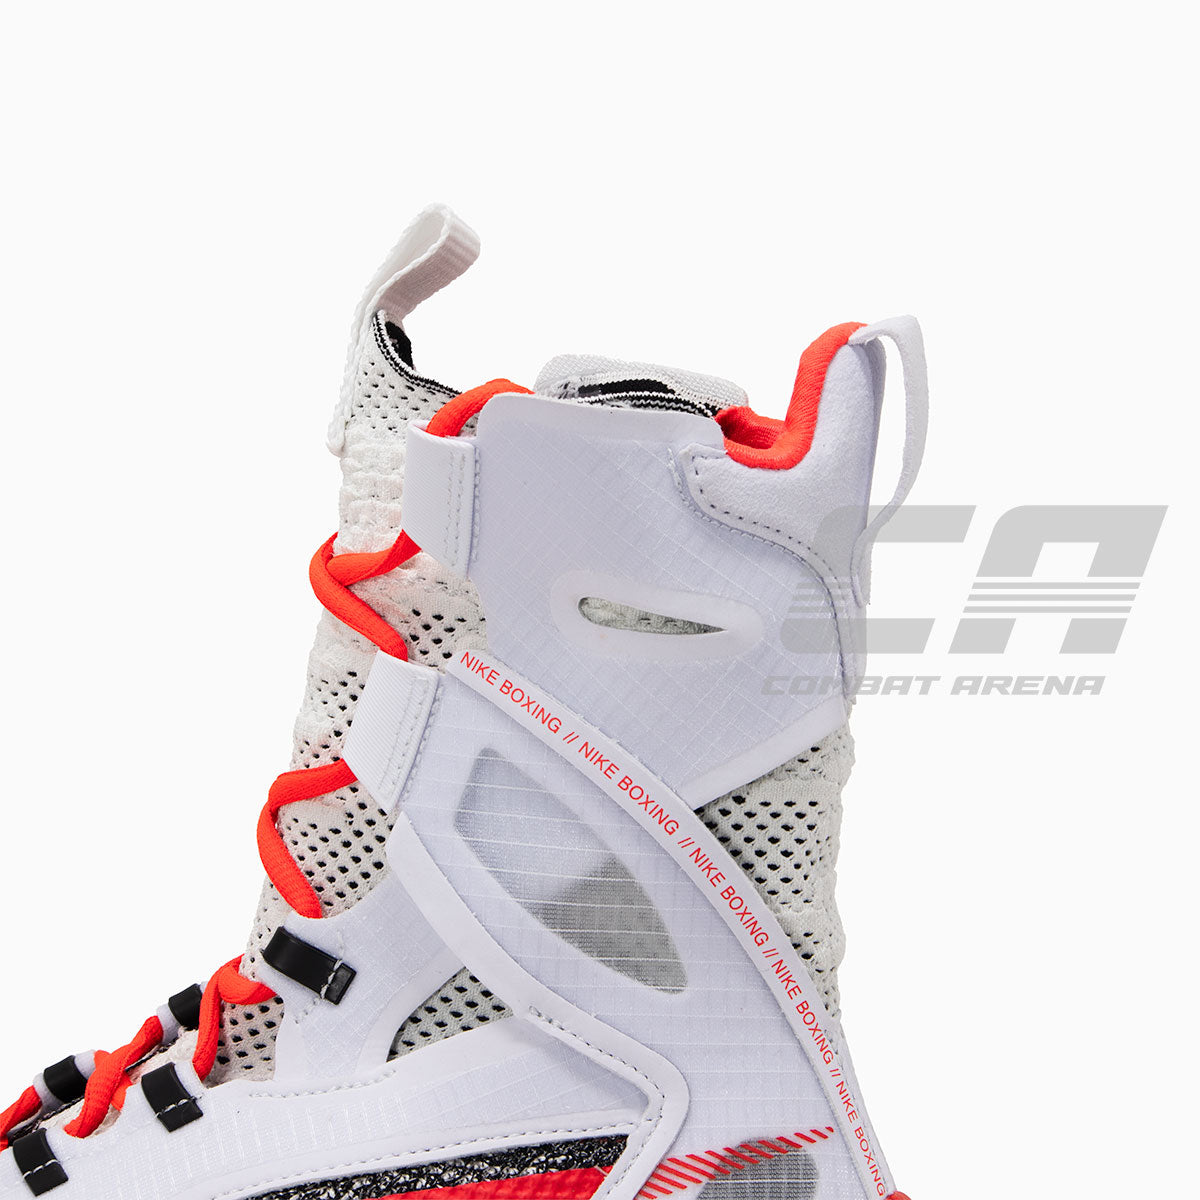 Buty Bokserskie Nike Hyperko 2.0 biało-karmazynowe